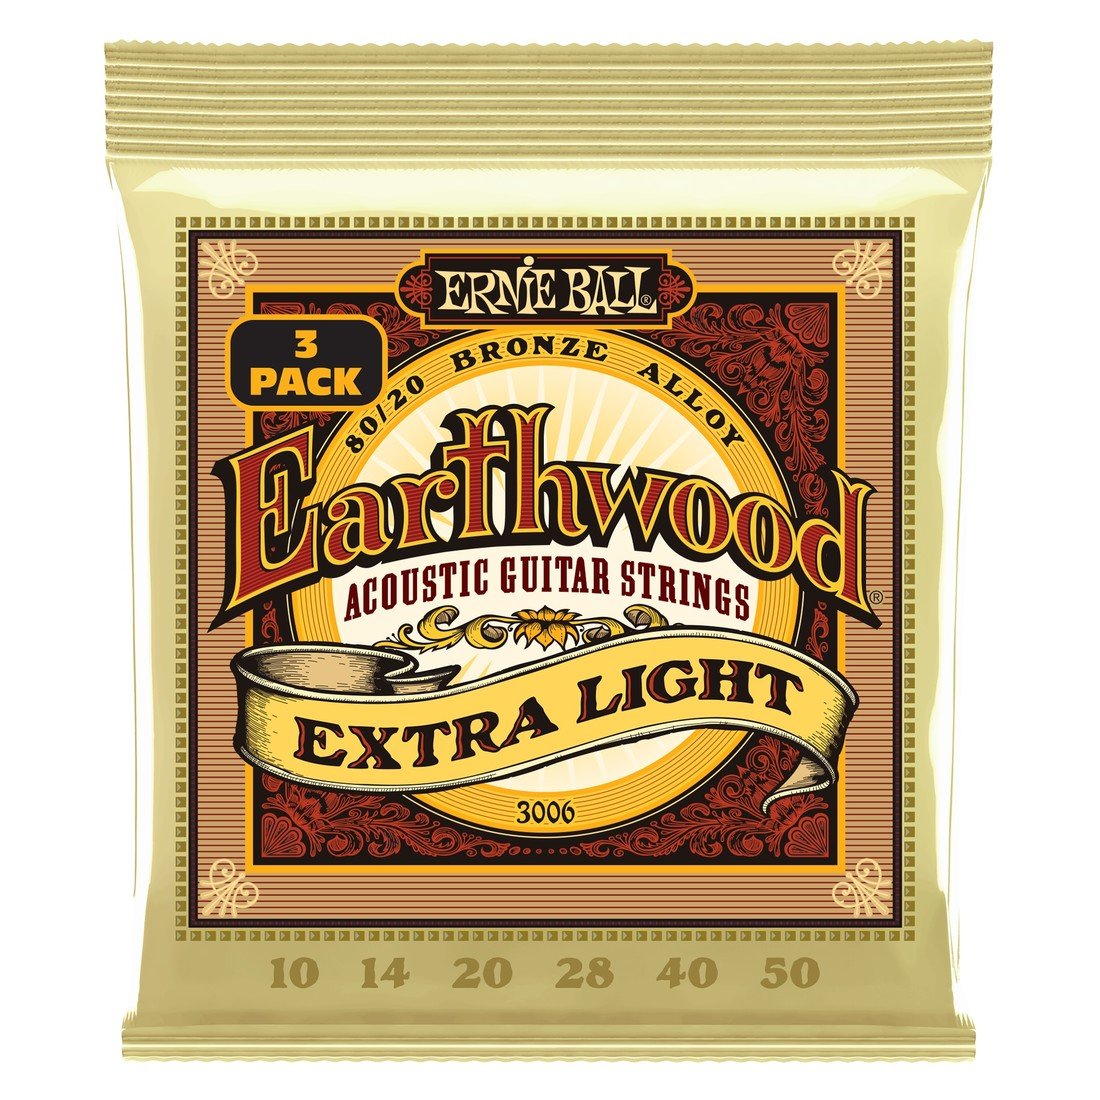 Ernie Ball Earthwood Extra Light 80/20 Bronze 3-Pack